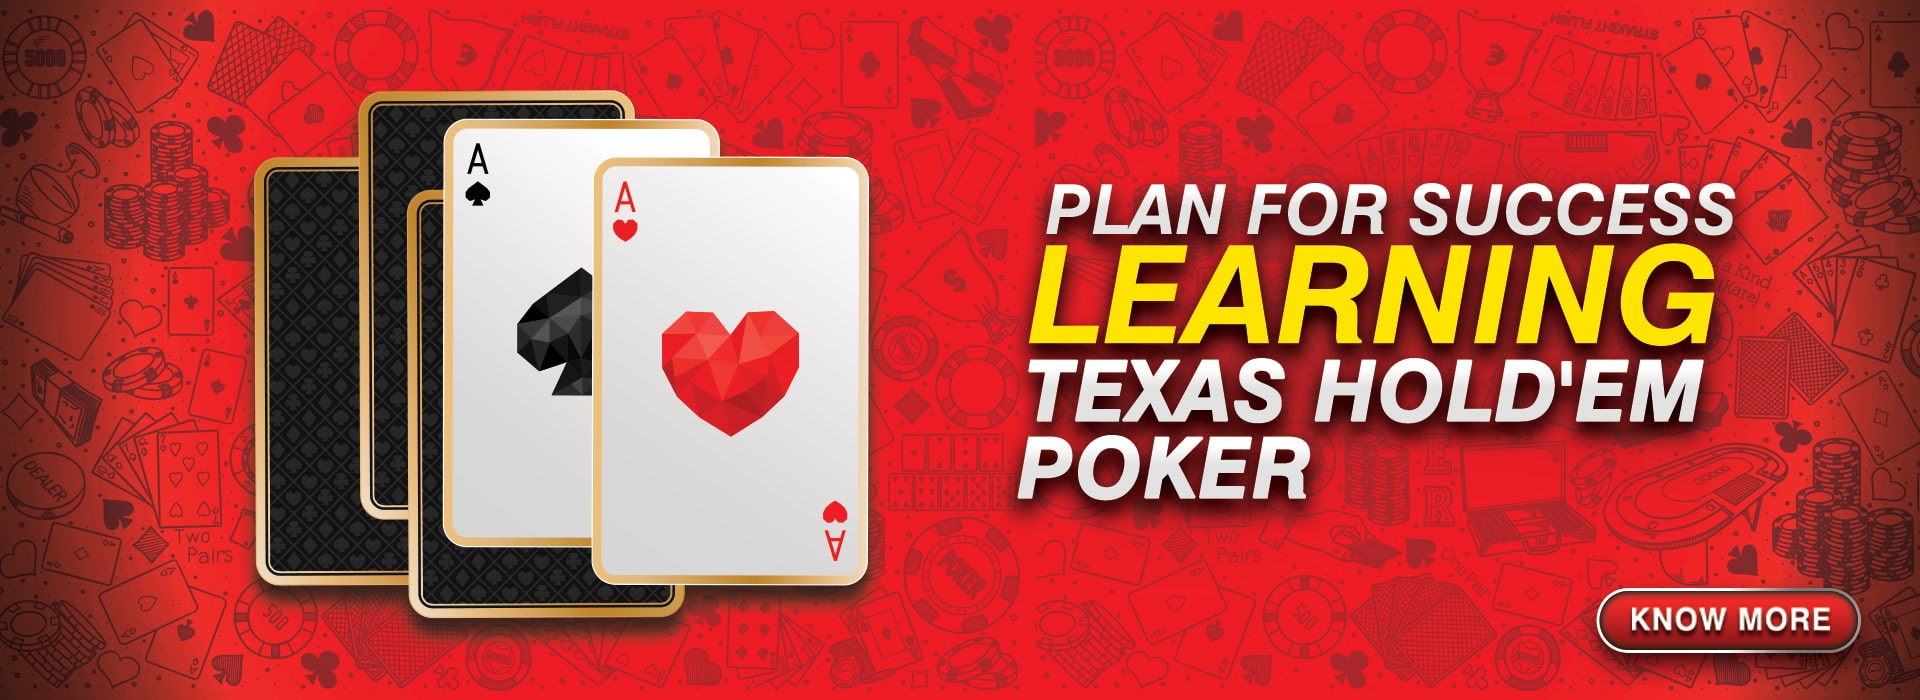 Learn Texas Holdem Poker